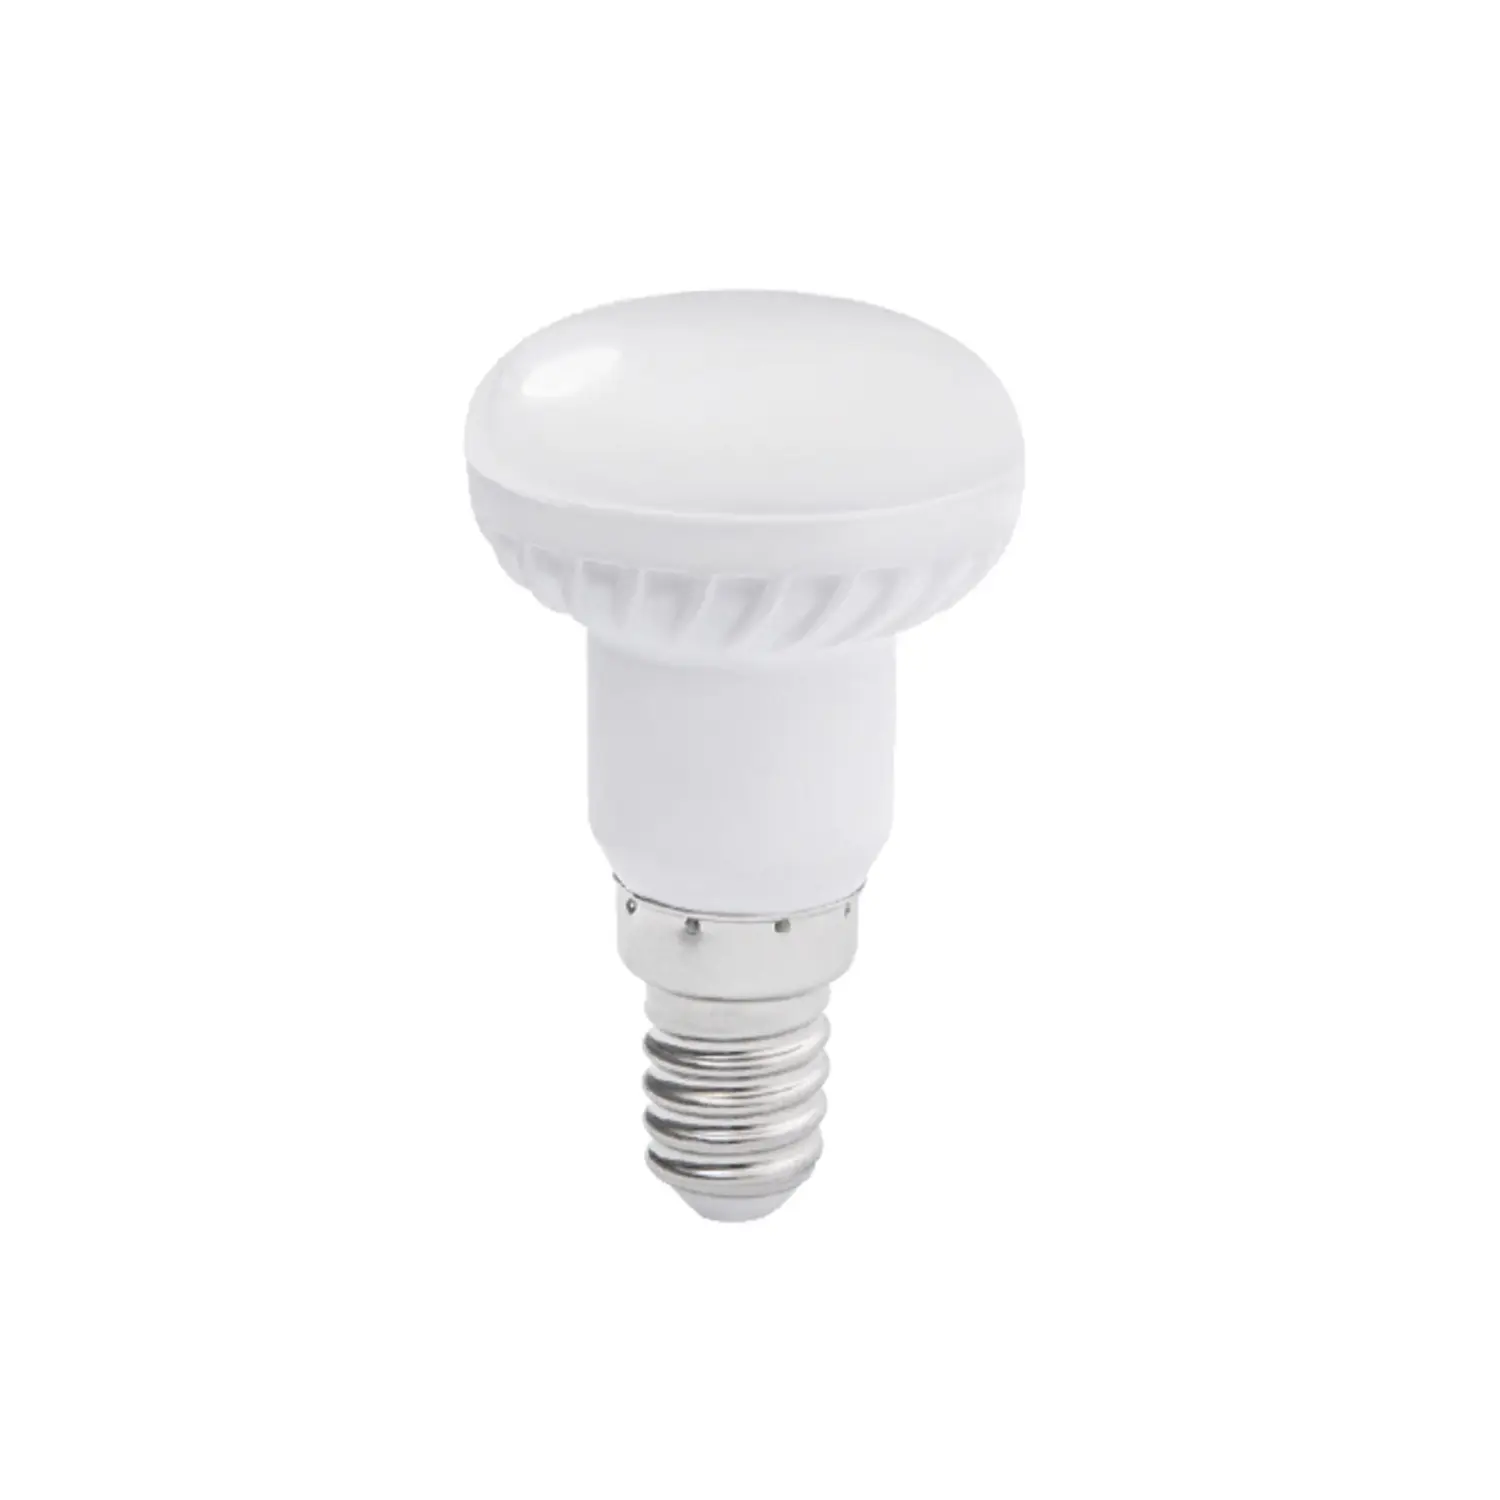 immagine del prodotto lampadina spot led 3 watt E14 CE bianco caldo 25000 ore 220-240 volt kan 22730